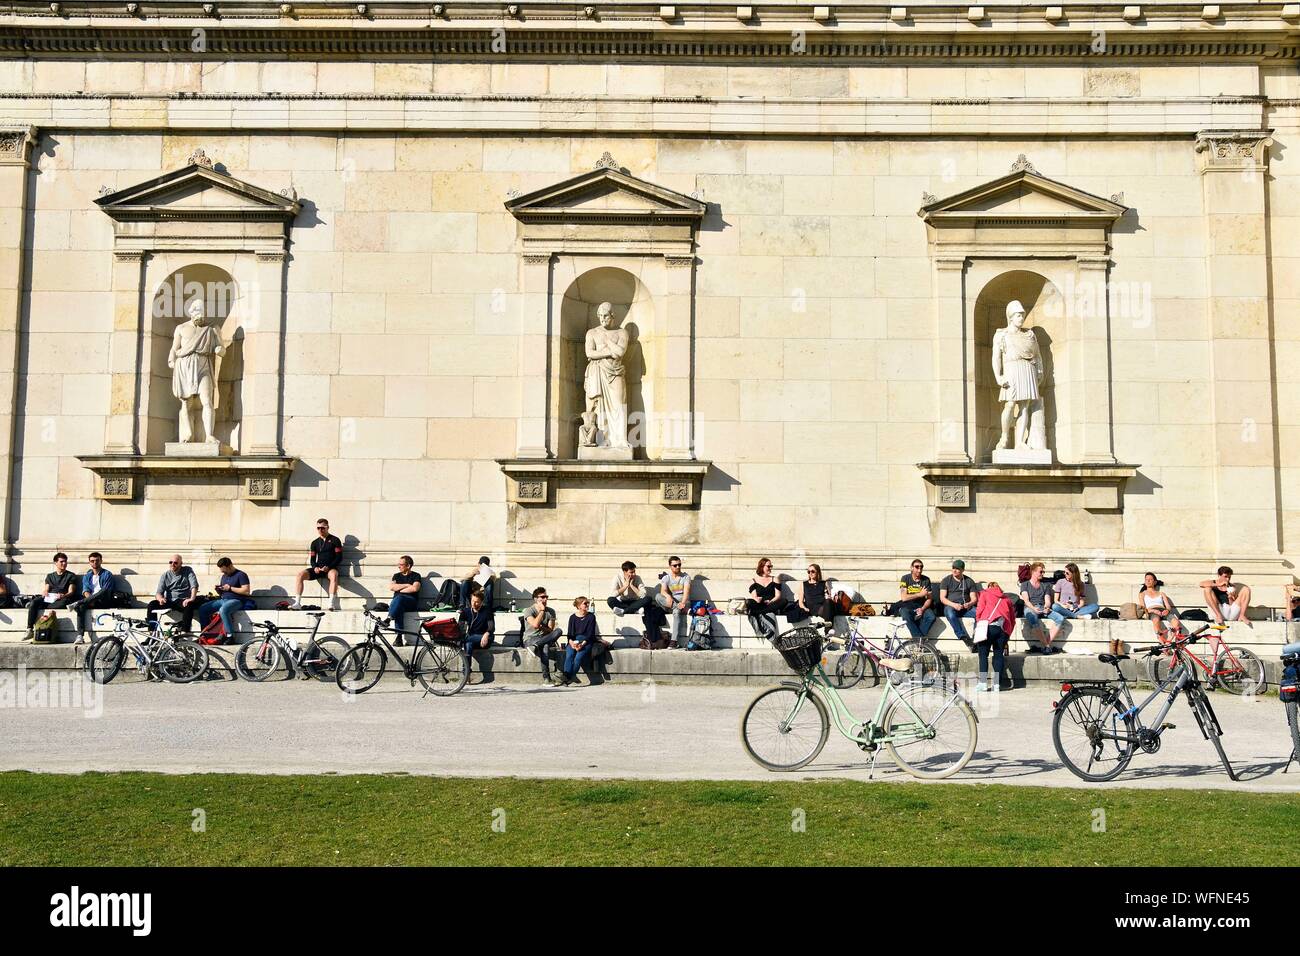 In Germania, in Baviera, Monaco di Baviera, Königsplatz, Glyptothek, museo fondata nel 1830 dal re Luigi I di Baviera per accogliere le sue collezioni di sculture greche e romane, studente lavora appoggiata contro la facciata neoclassica Foto Stock